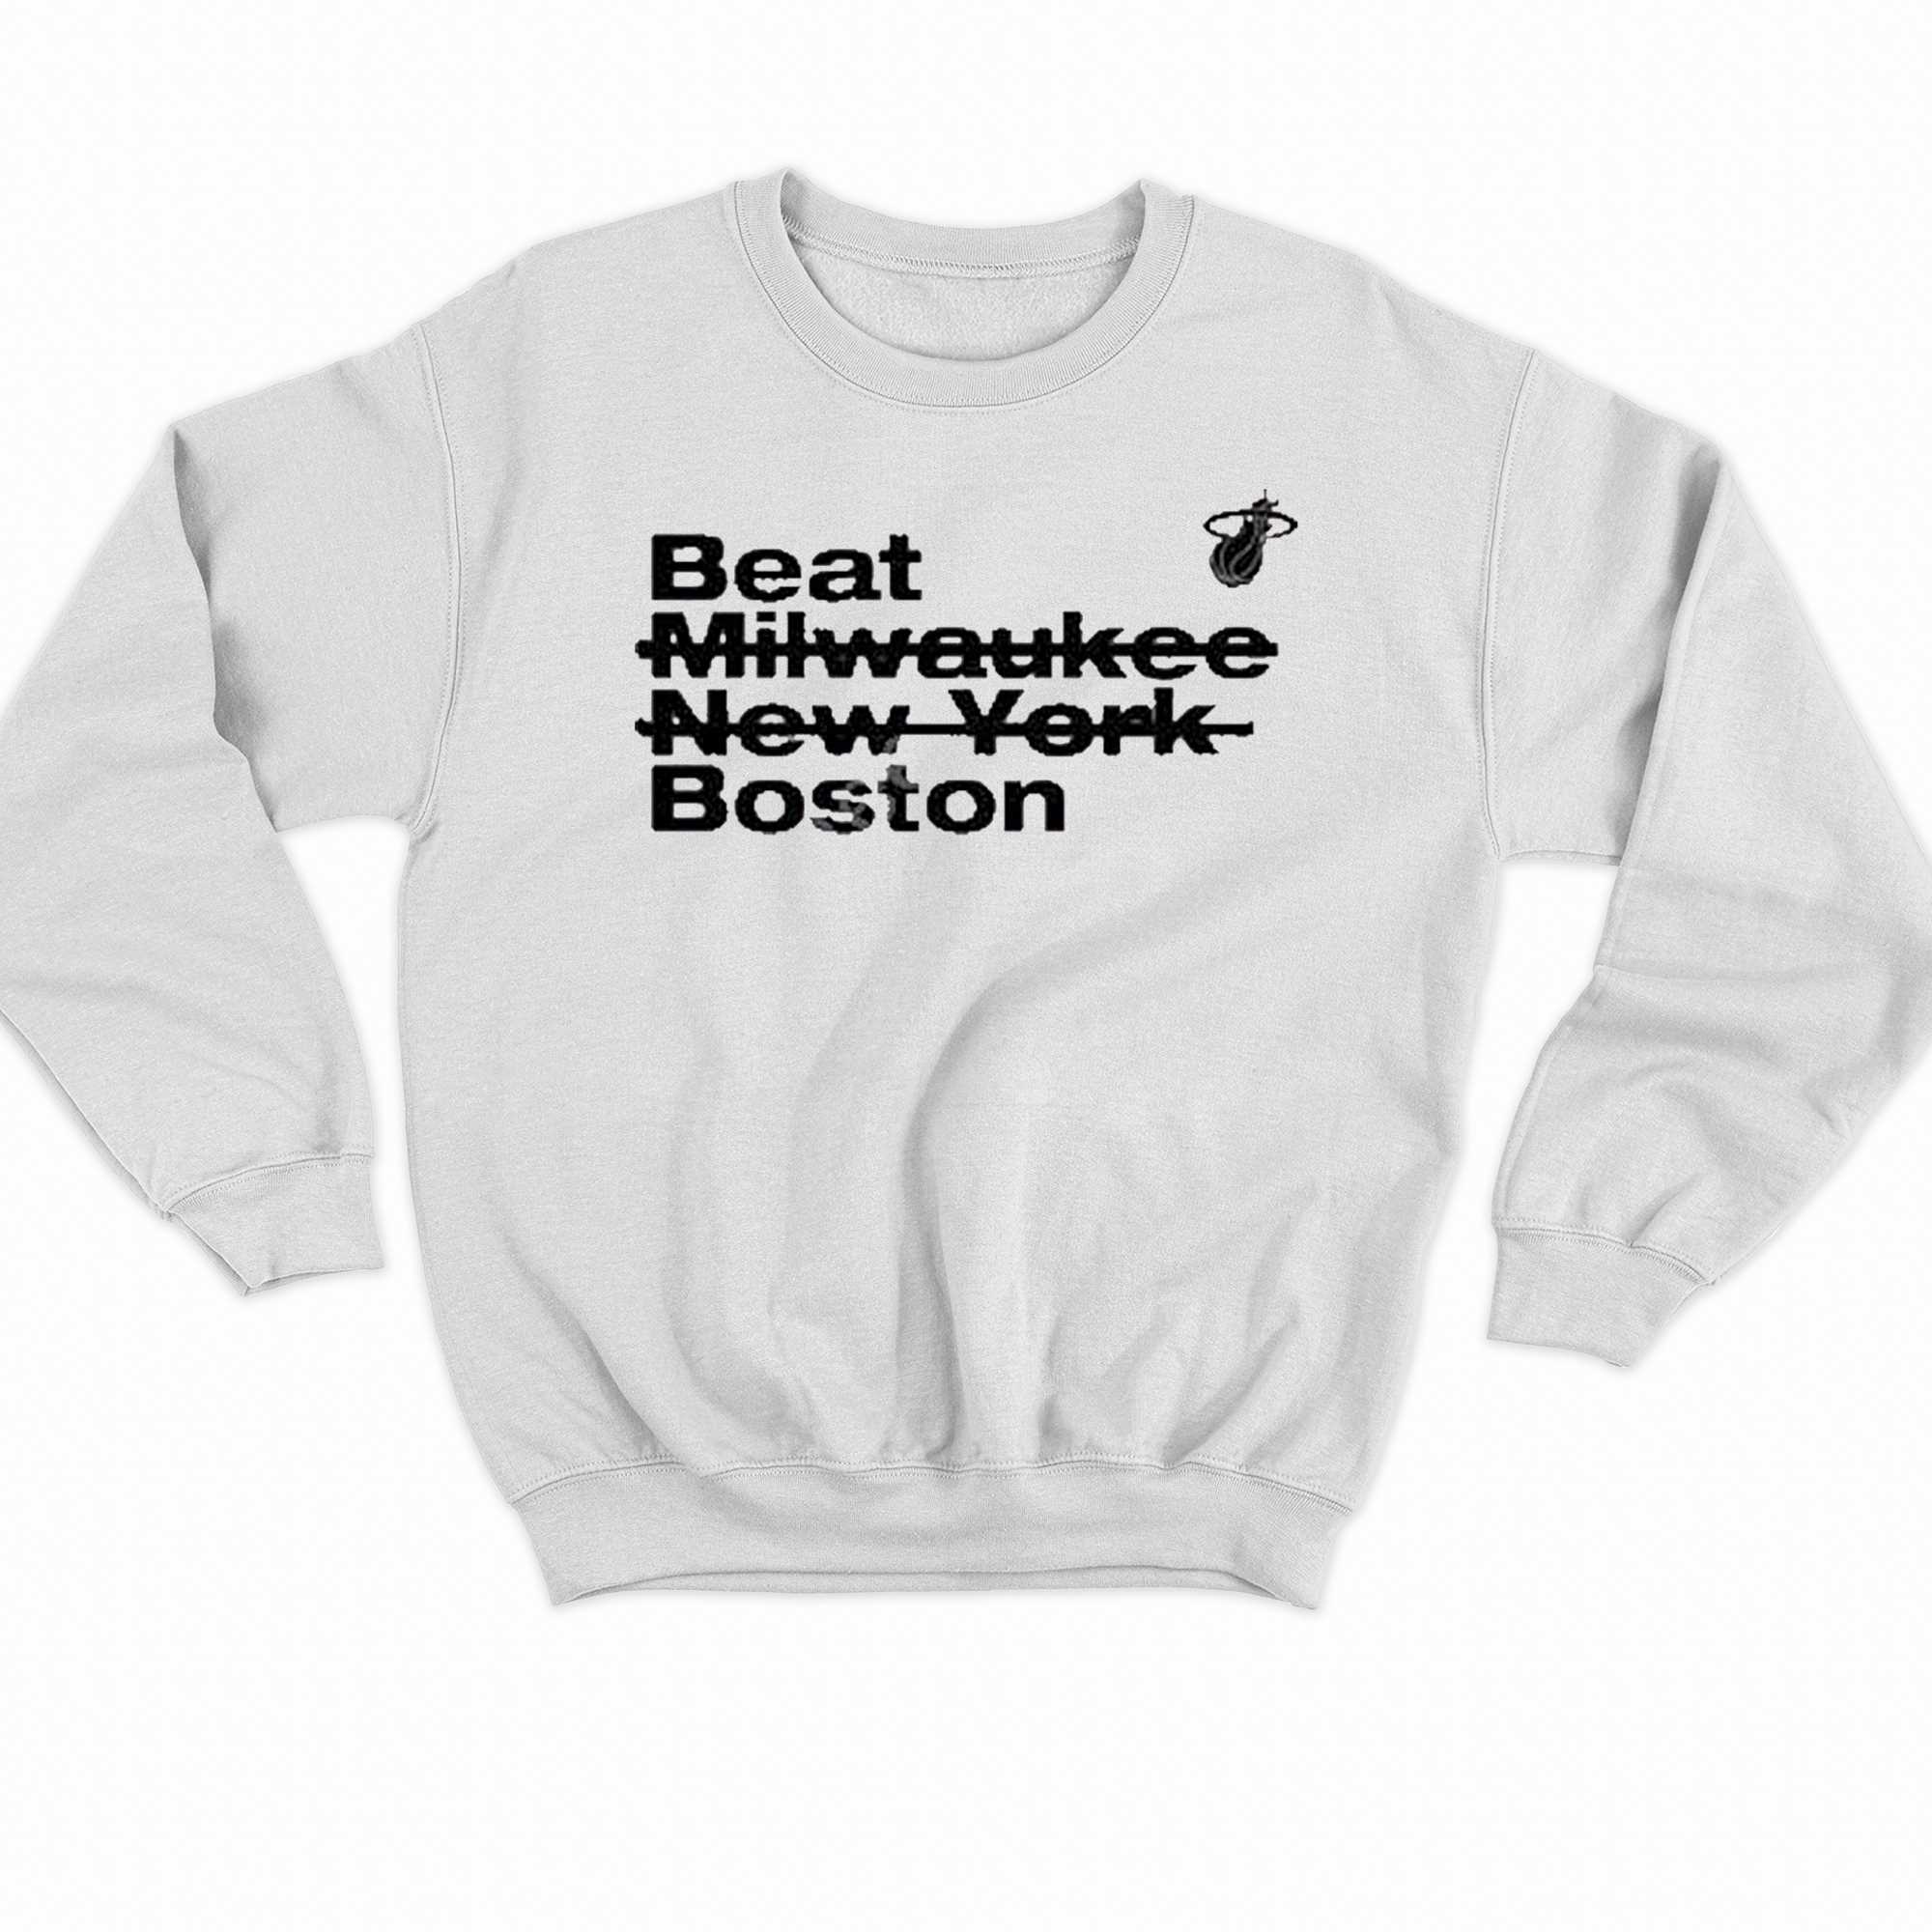 Beat Milwaukee New York Boston Shirt 